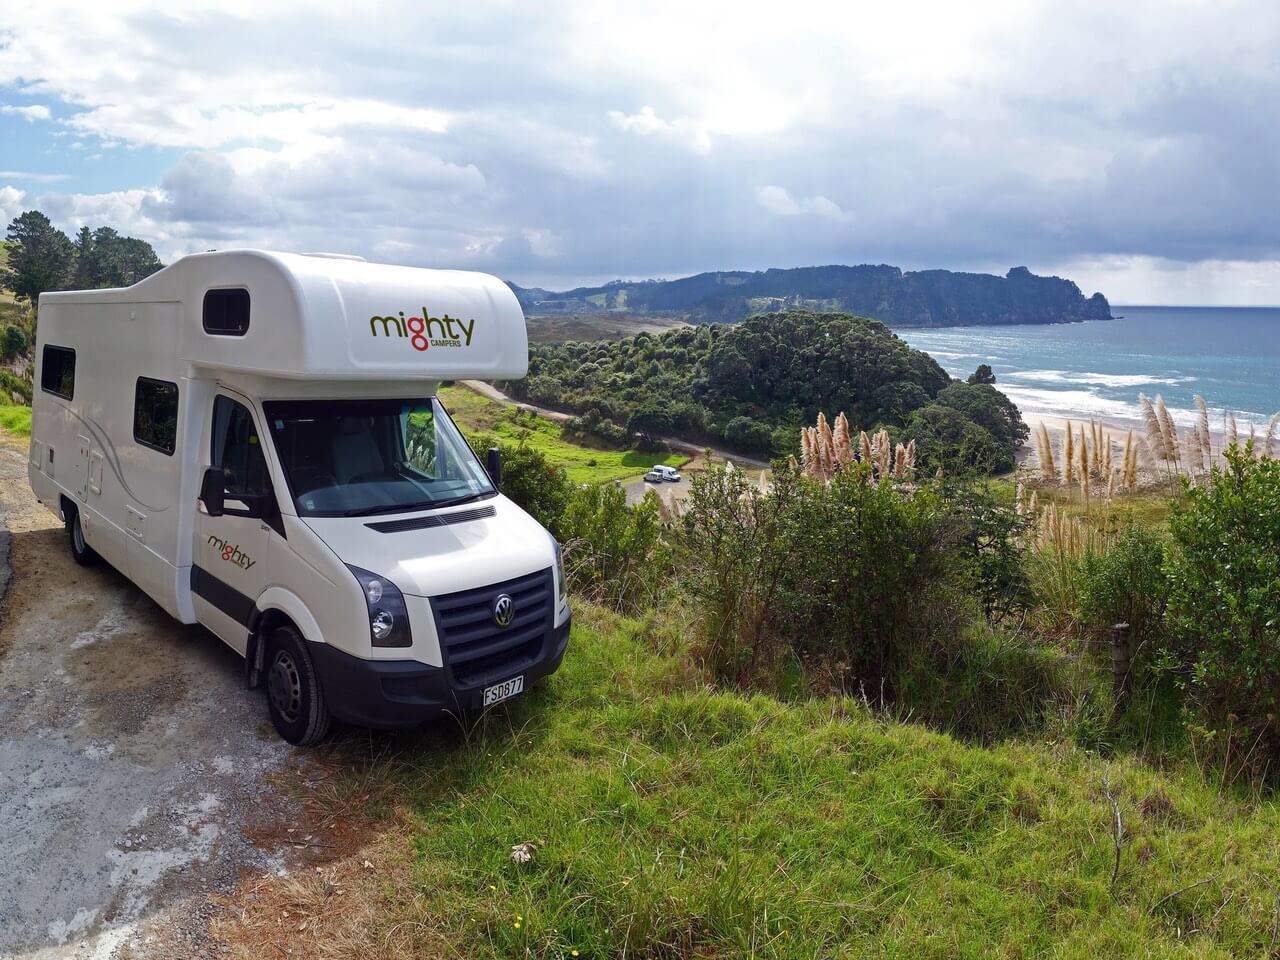 Wohnmobil Big Six von Mighty an der Küste von Australien